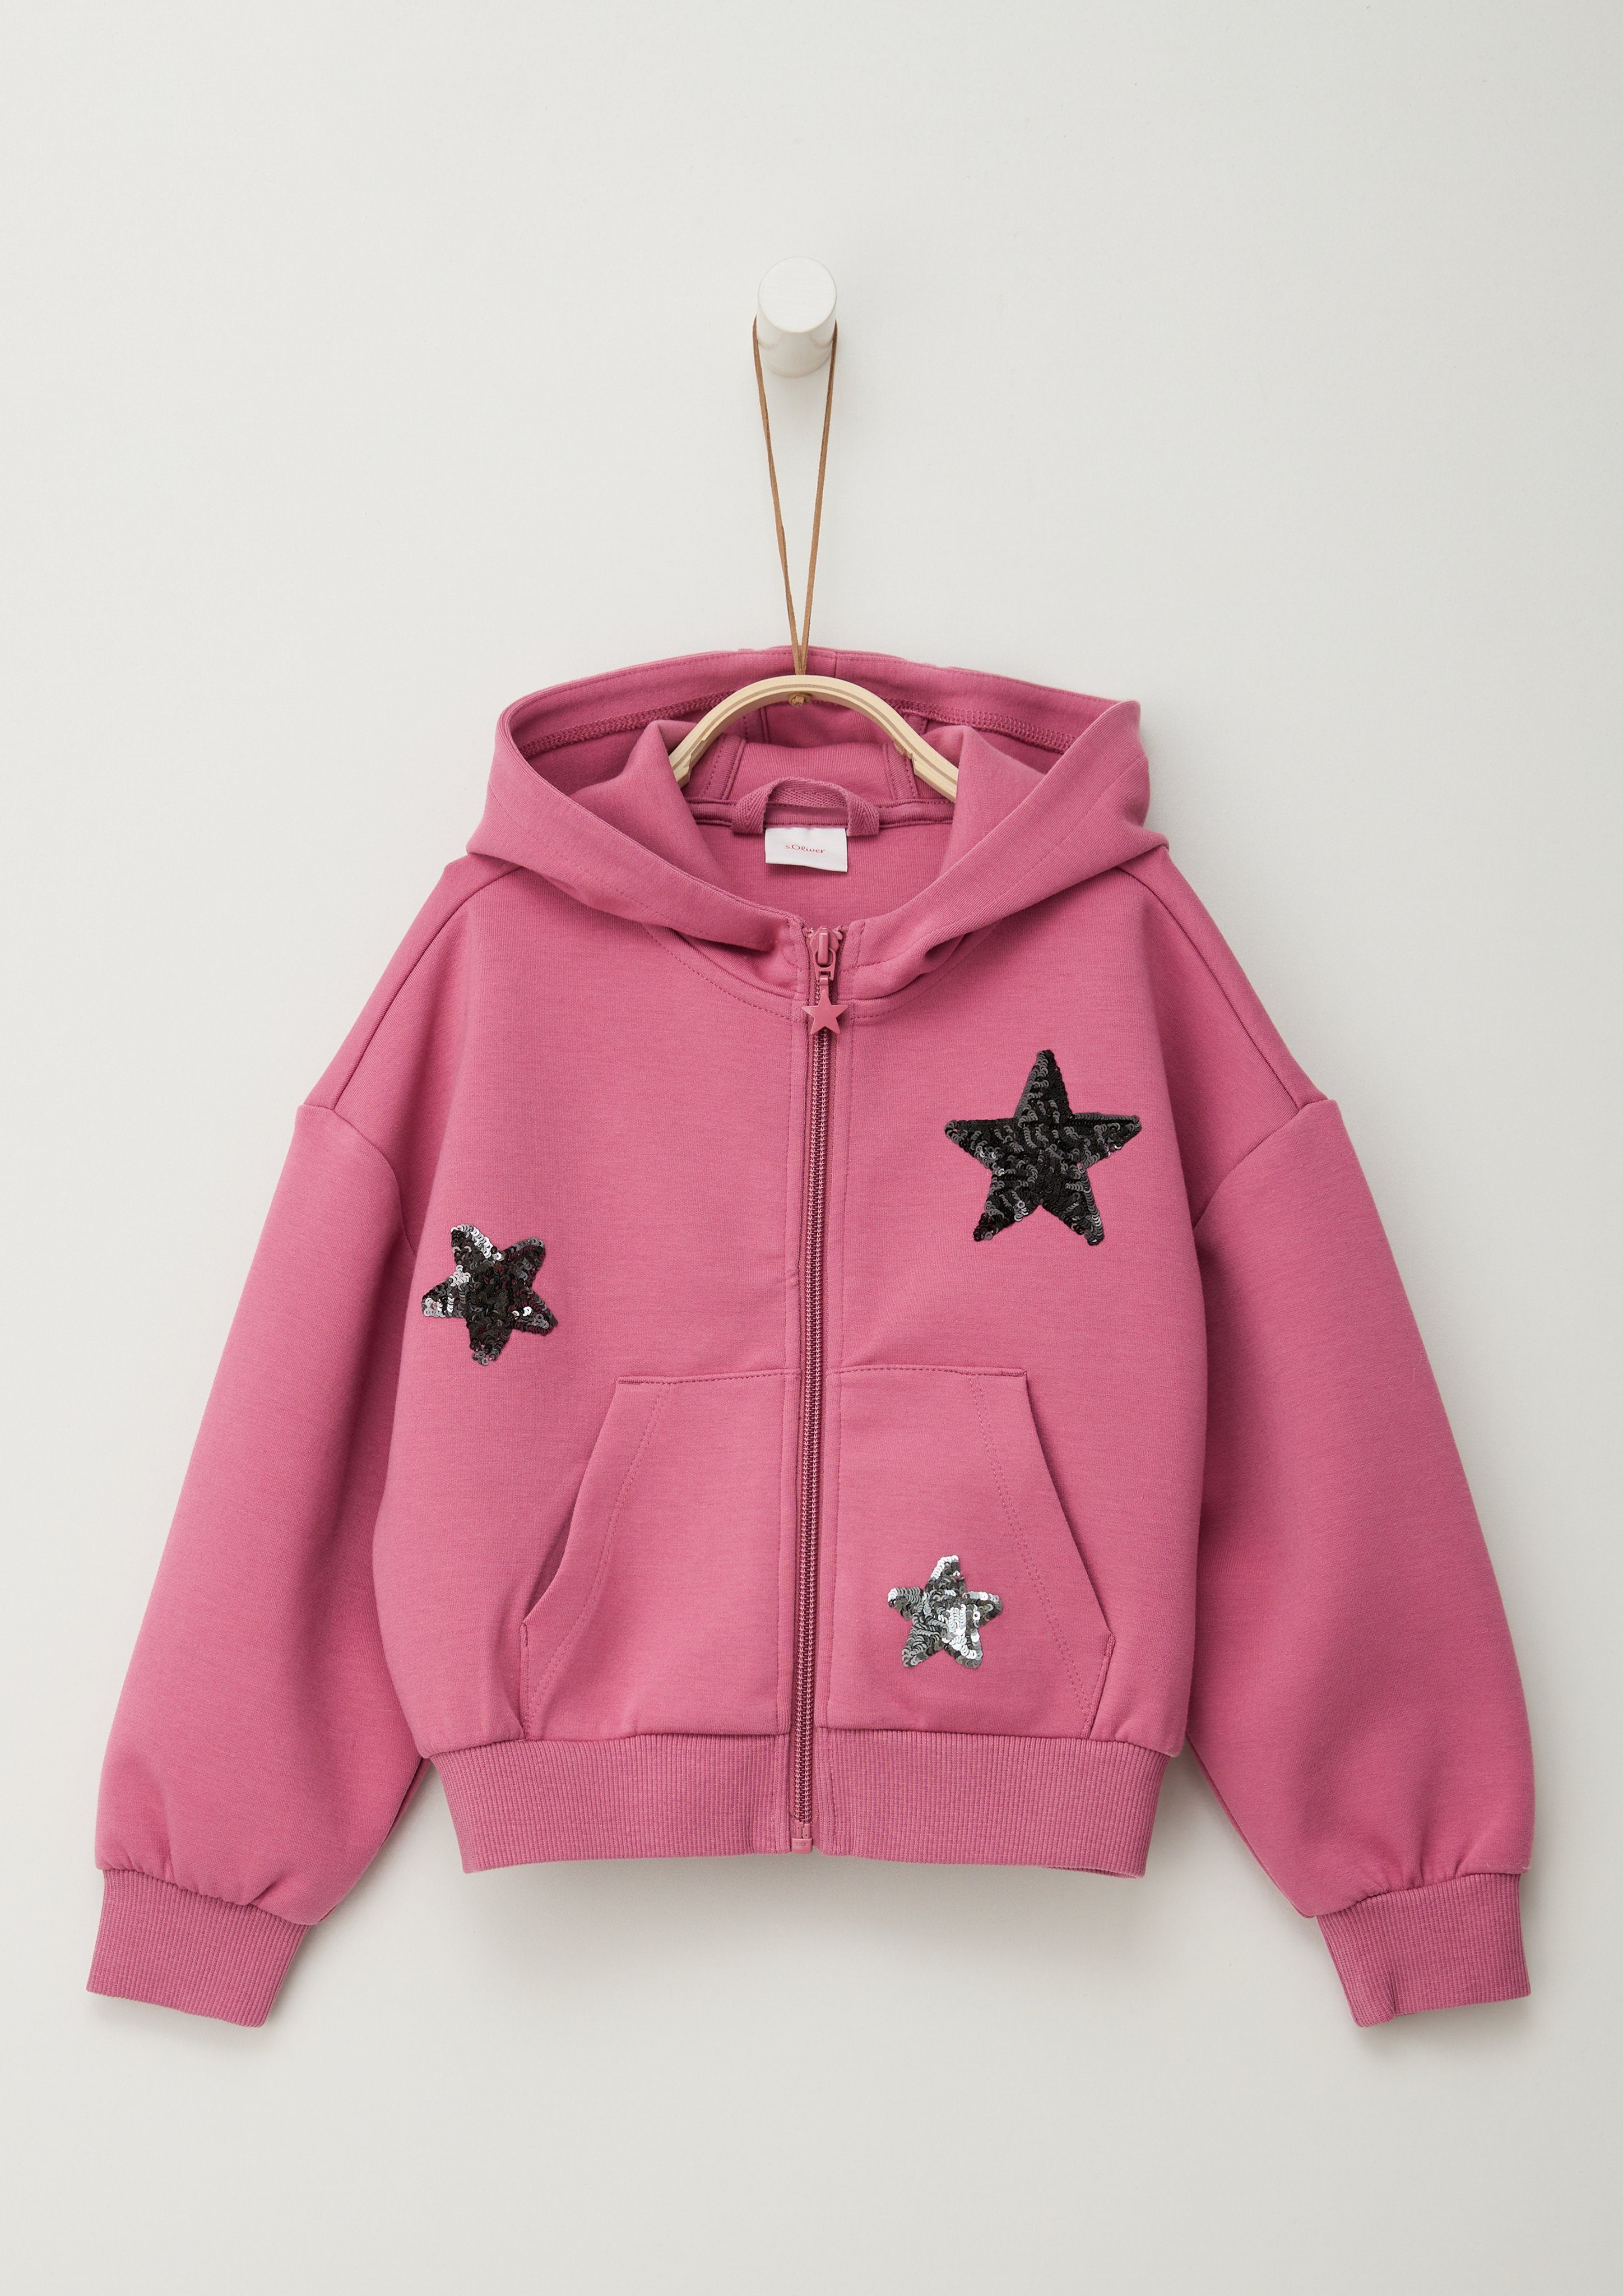 Junior mit Pailetten-Sterne angebrachten Sweatjacke pink s.Oliver